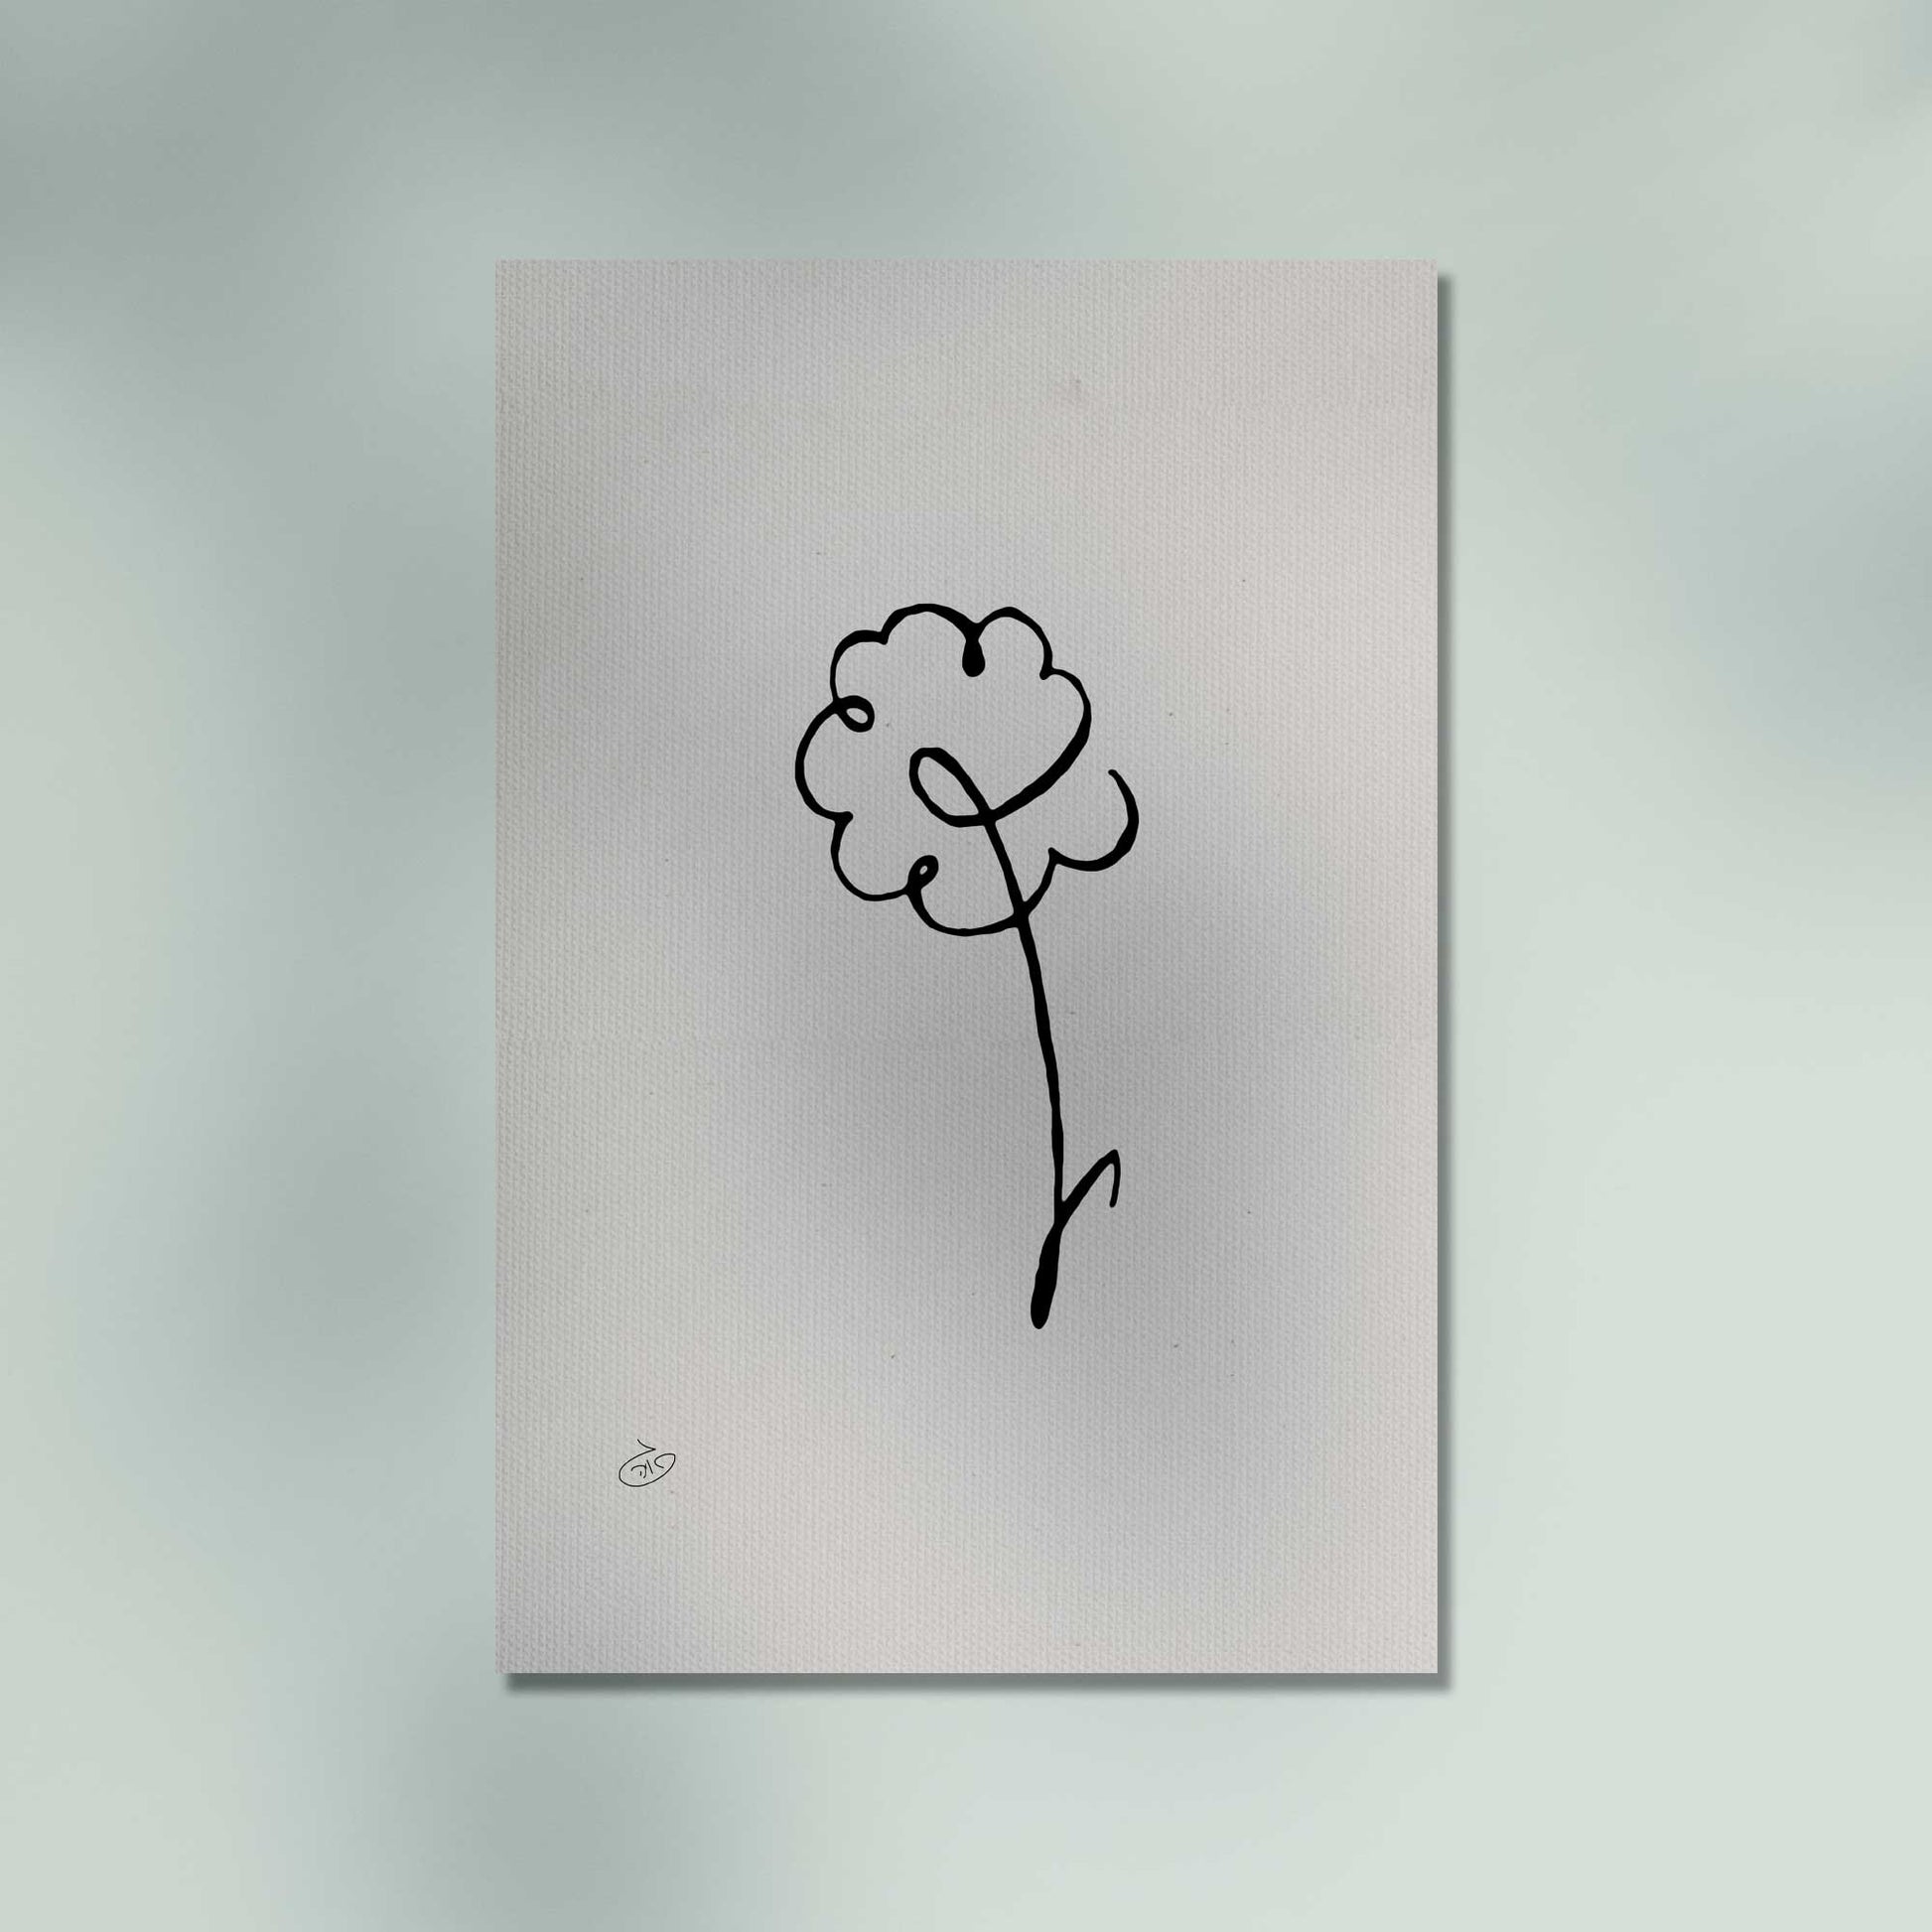 פוסטר One Line Flower - Calendula Poster ציור מקורי של גאיה המקדם את המודעות לאלימות בין בני זוג בכלל וכלפי נשים בפרט